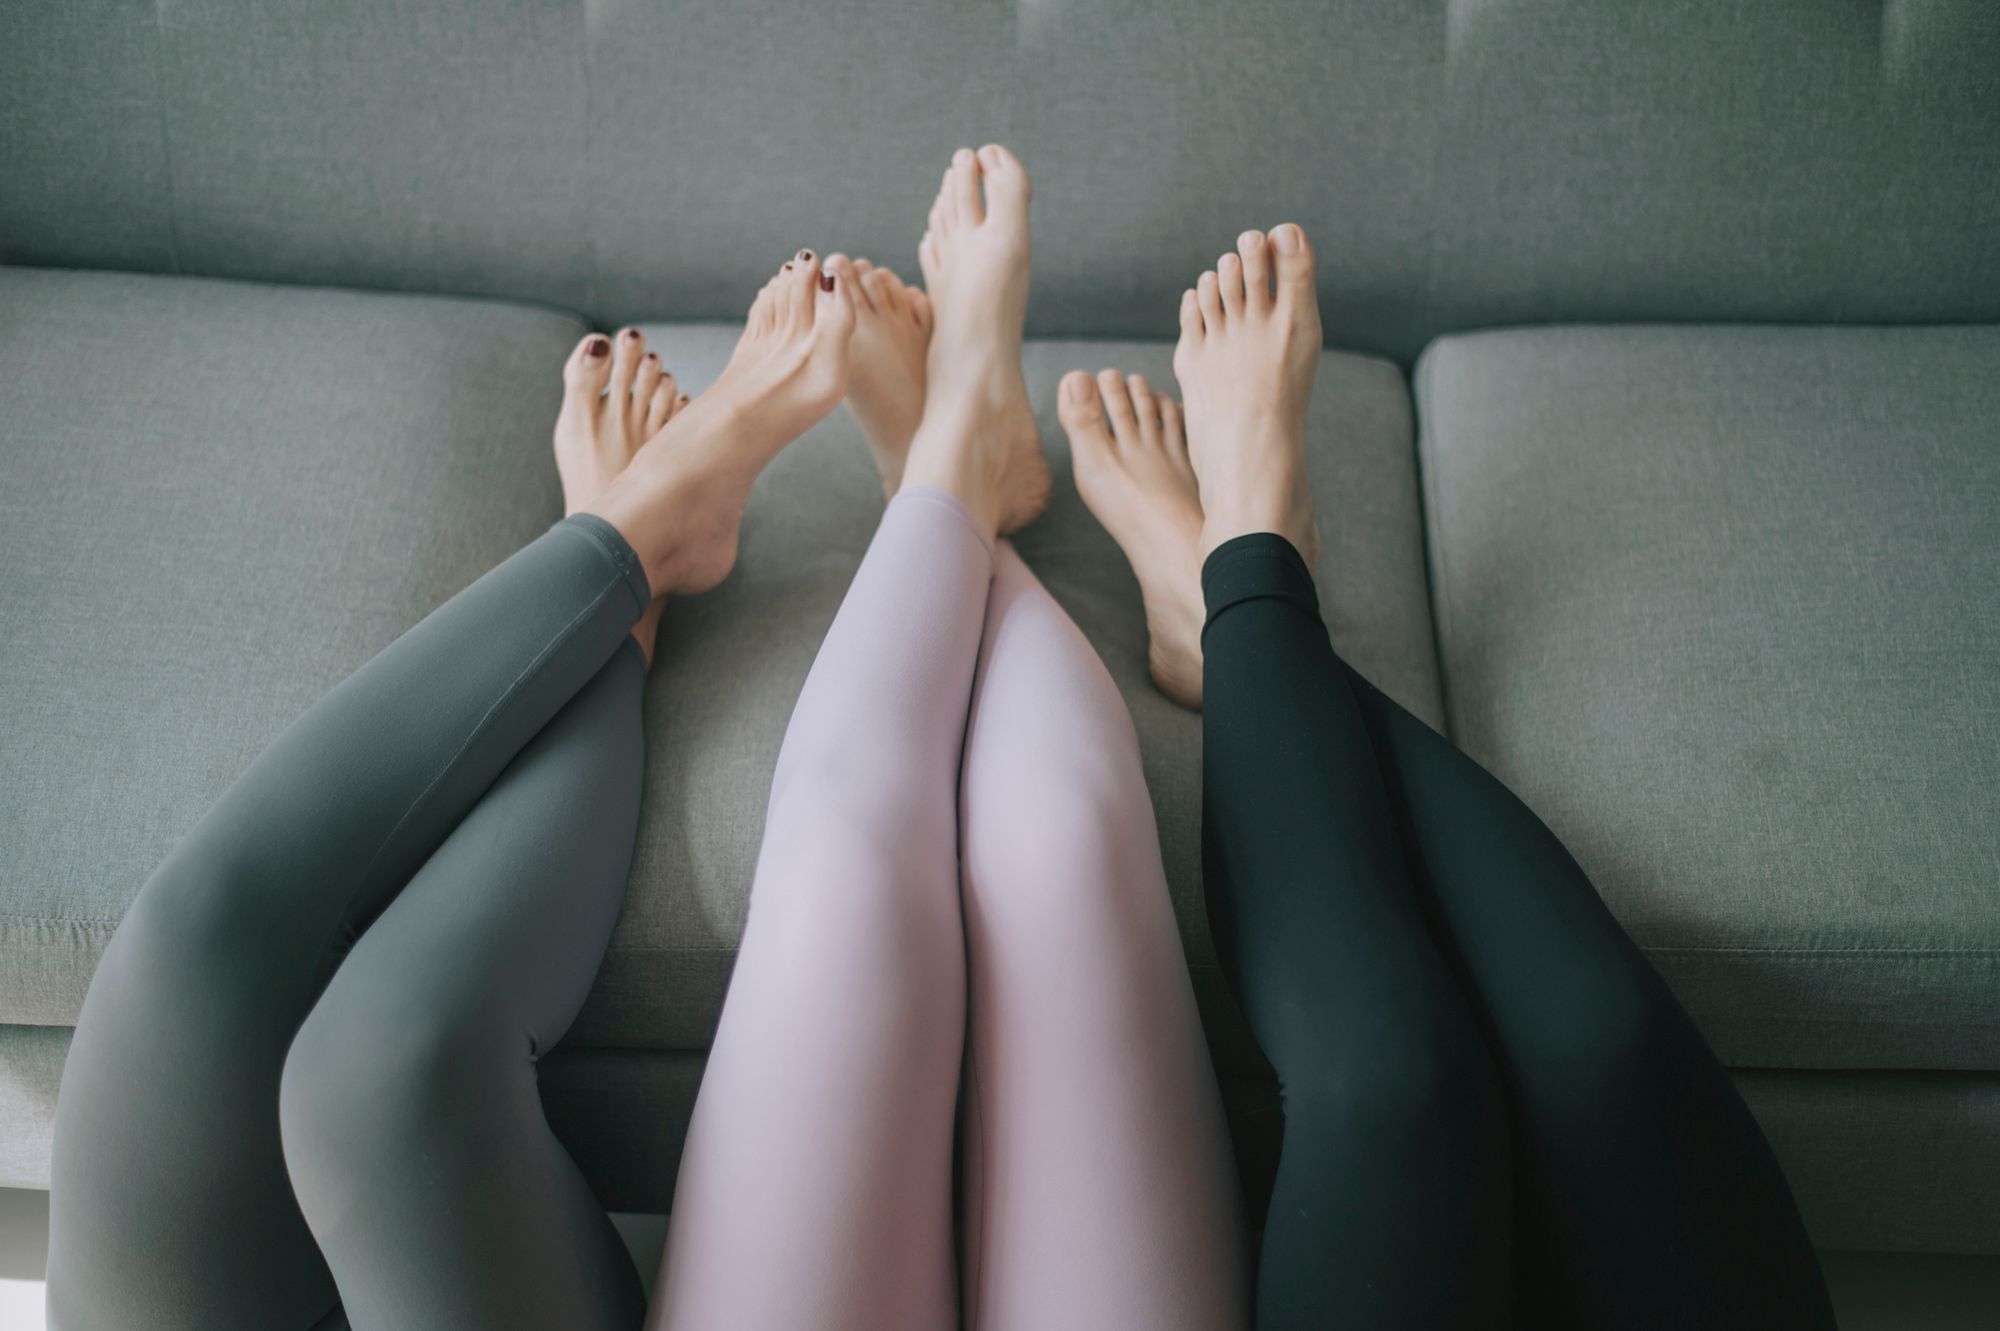 Drei Frauen, die ihre Beine mit nackten Füßen auf die Couch legen